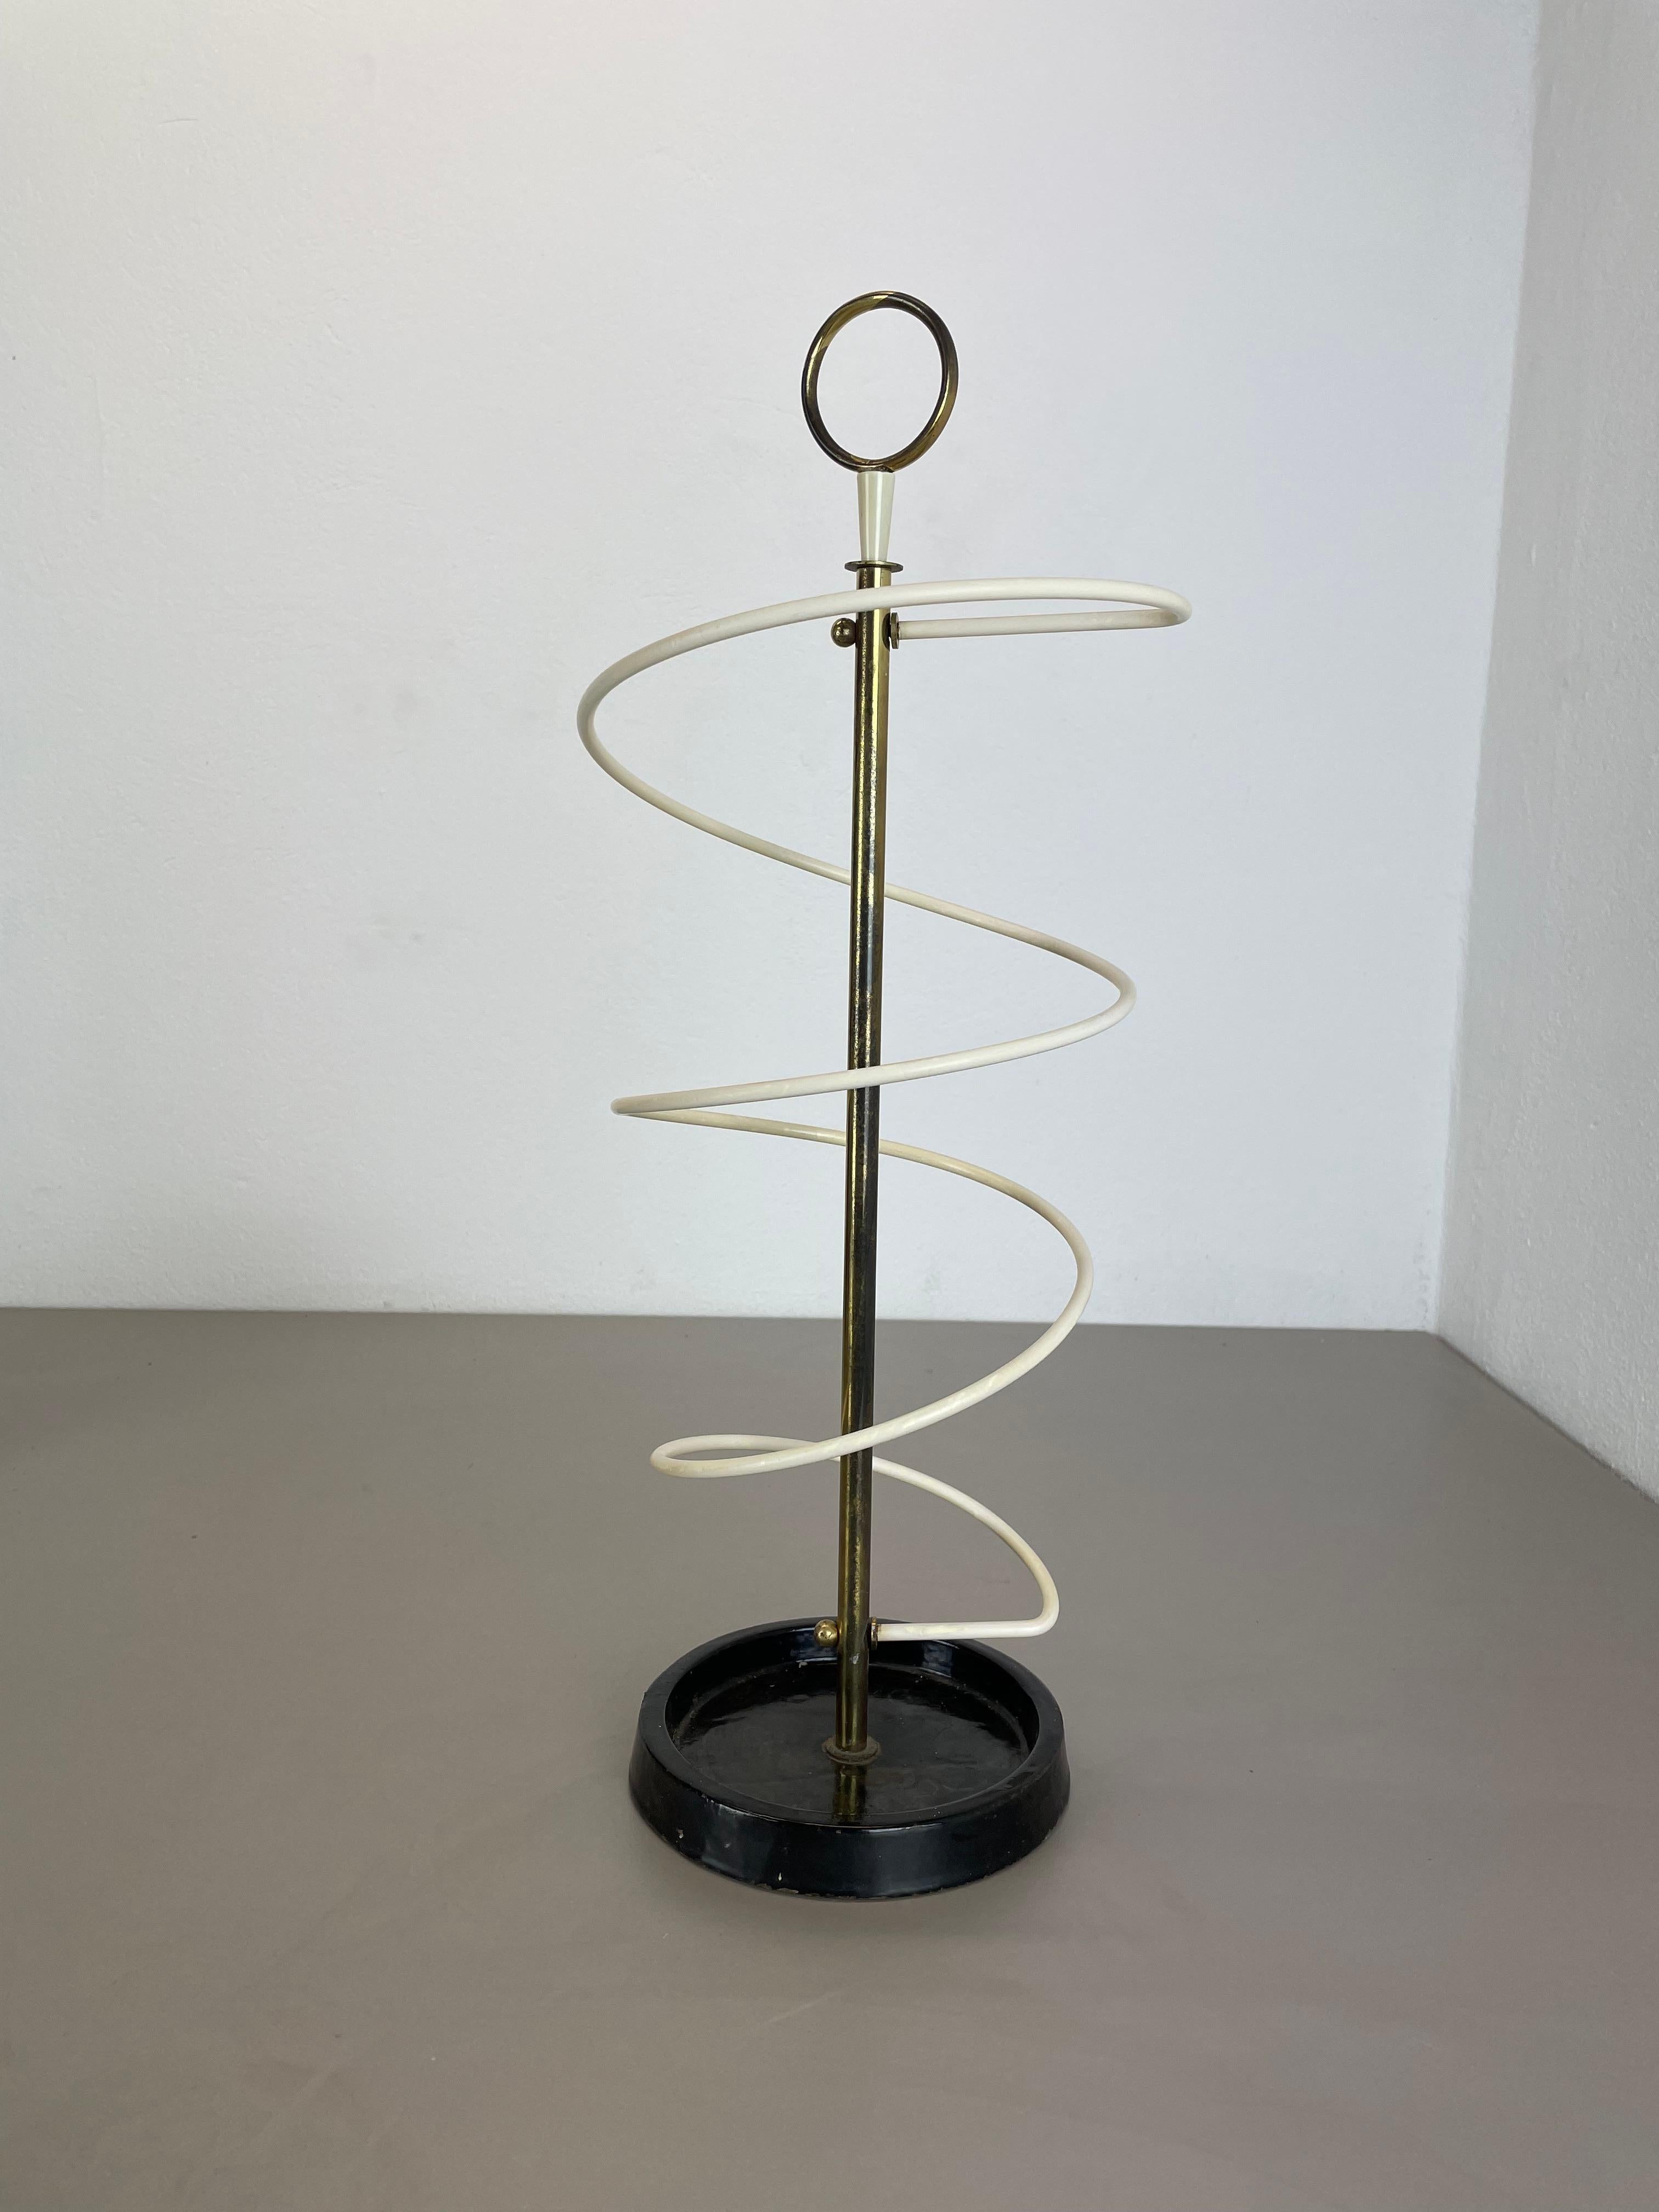 Mid-20th Century looped form Metal Brass Umbrella Stand by Vereinigte Werkstätten, Germany 1950s